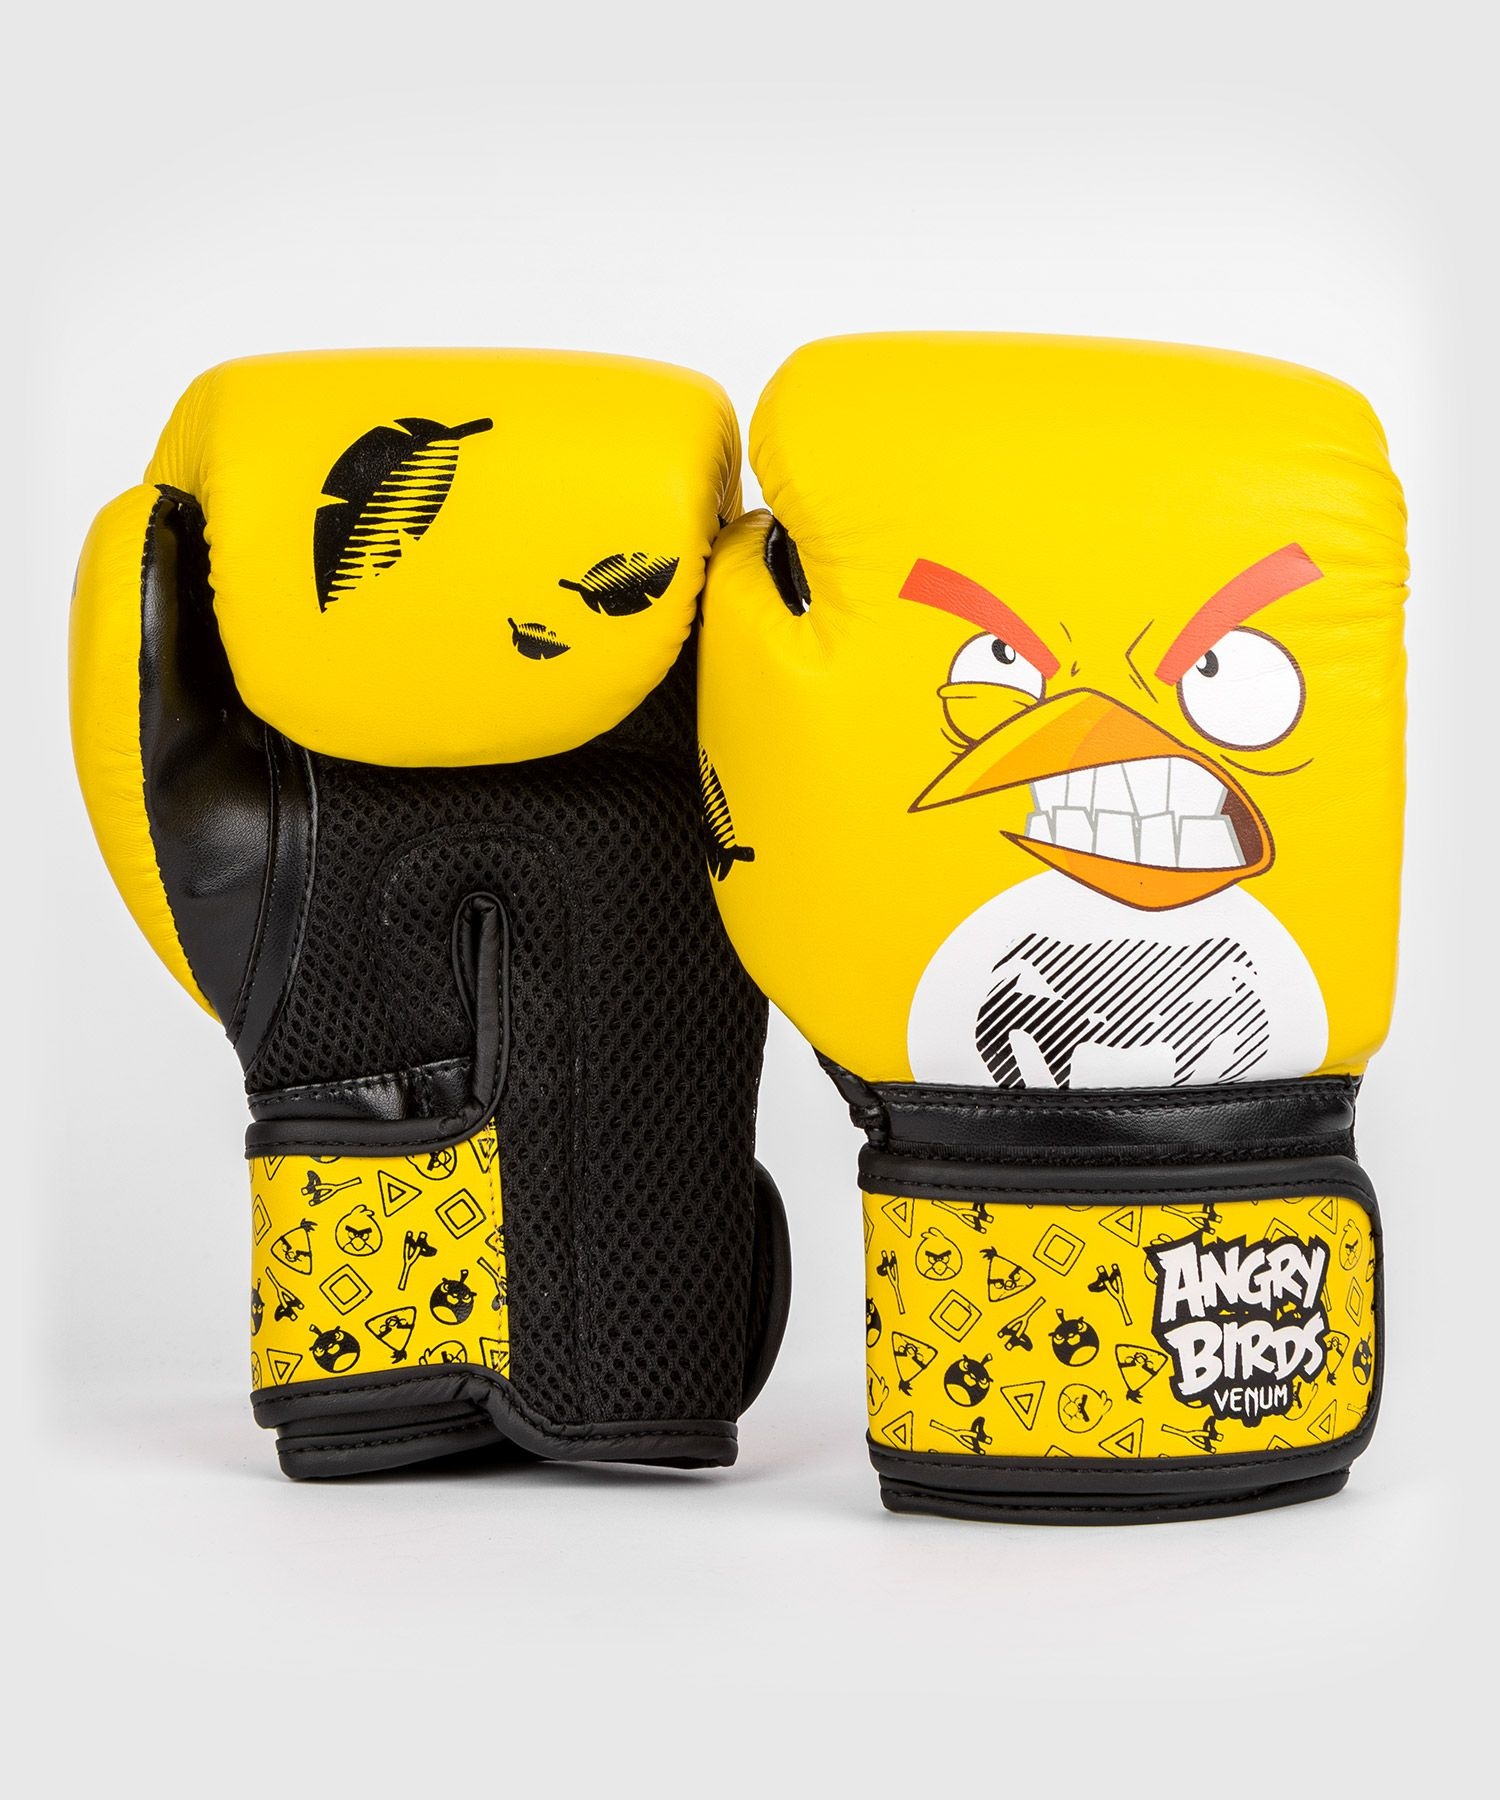 Gelb Kinder Venum SHOP Angry Boxhandschuhe - DEUTSCHLAND FIGHTWEAR Schwarz Birds